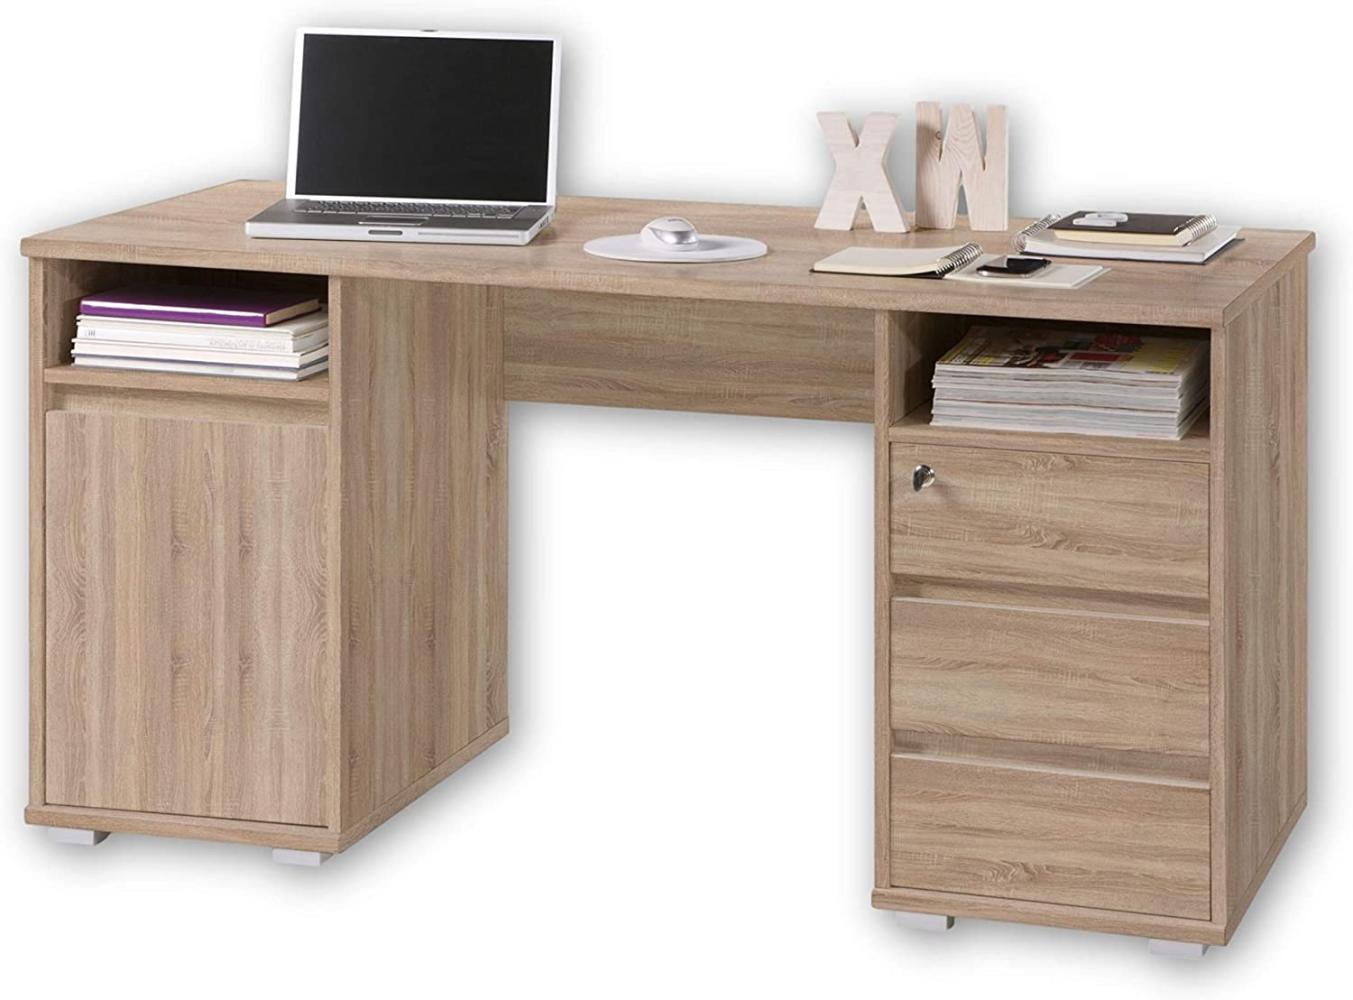 PRIMUS 2 Schreibtisch mit Schubladen, Sonoma Eiche Optik - Bürotisch Computertisch fürs Homeoffice mit Stauraum und offenen Ablagefächern - 145 x 74 x 65 cm (B/H/T) Bild 1